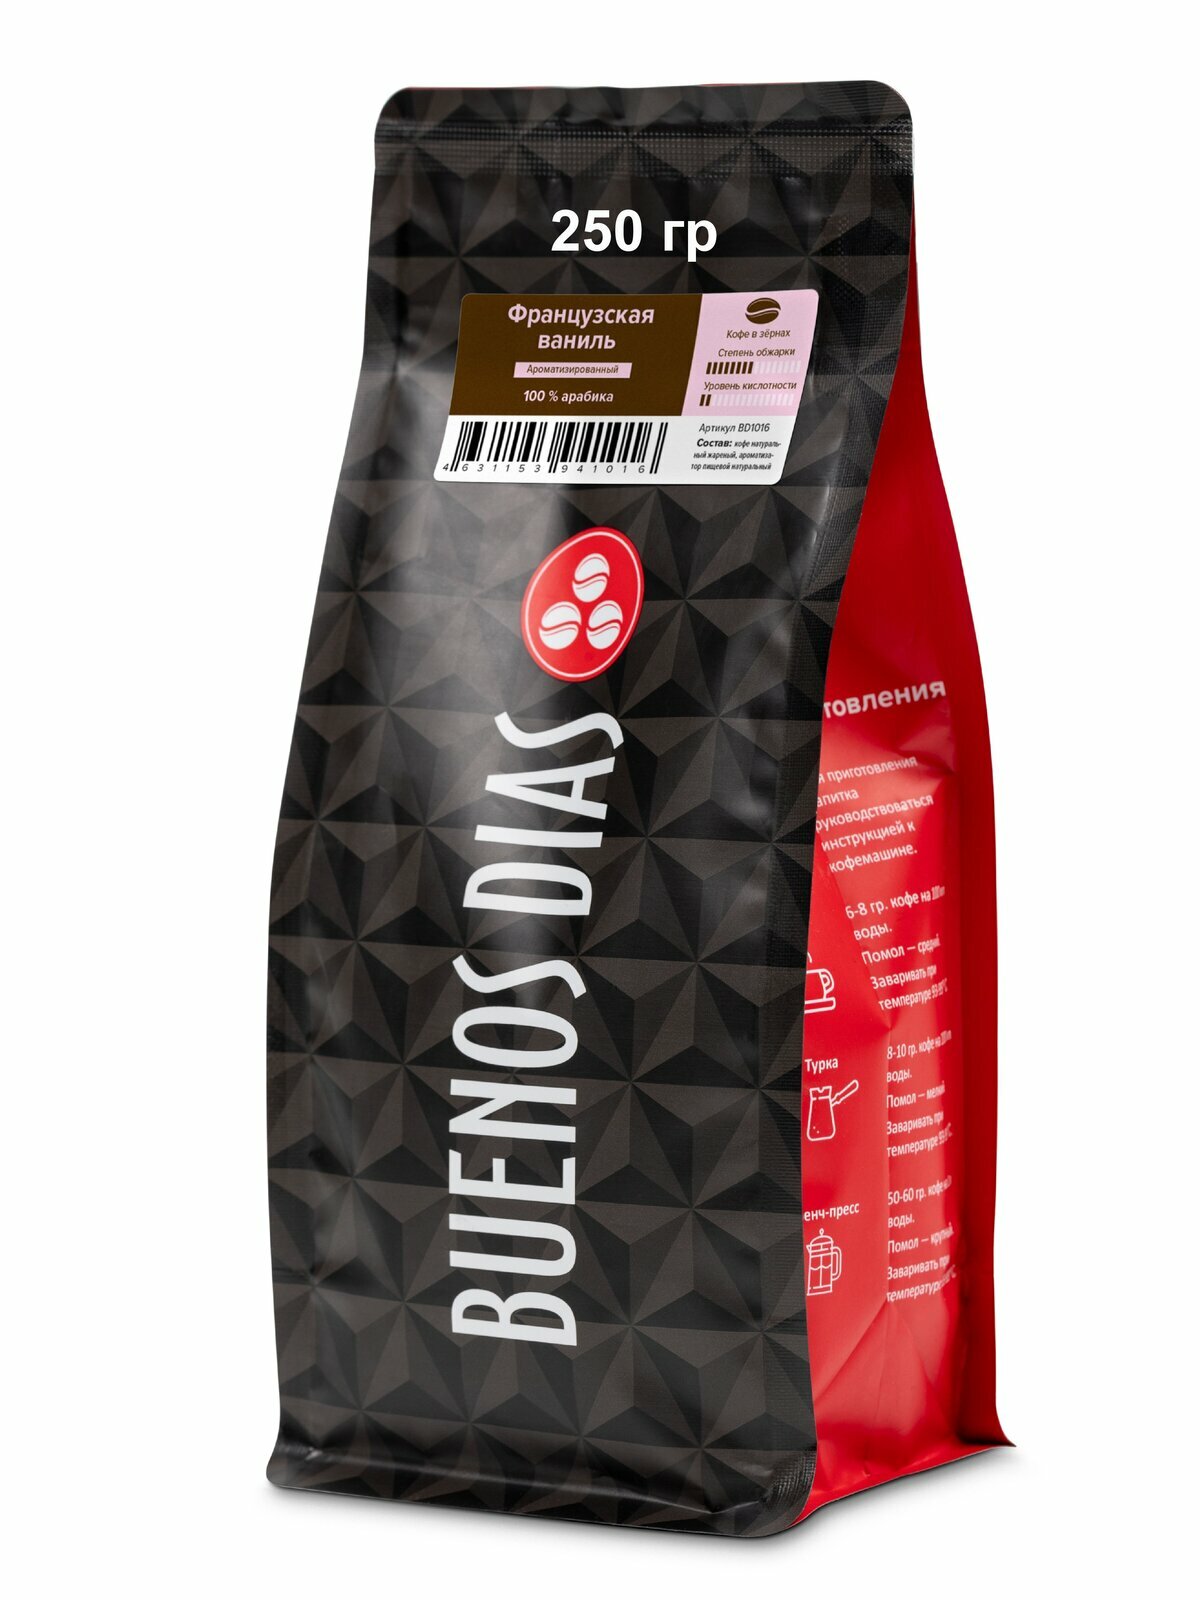 BUENOS DIAS / Кофе Французская ваниль (100% Арабика) в зёрнах ароматизированный, уп. 250 гр